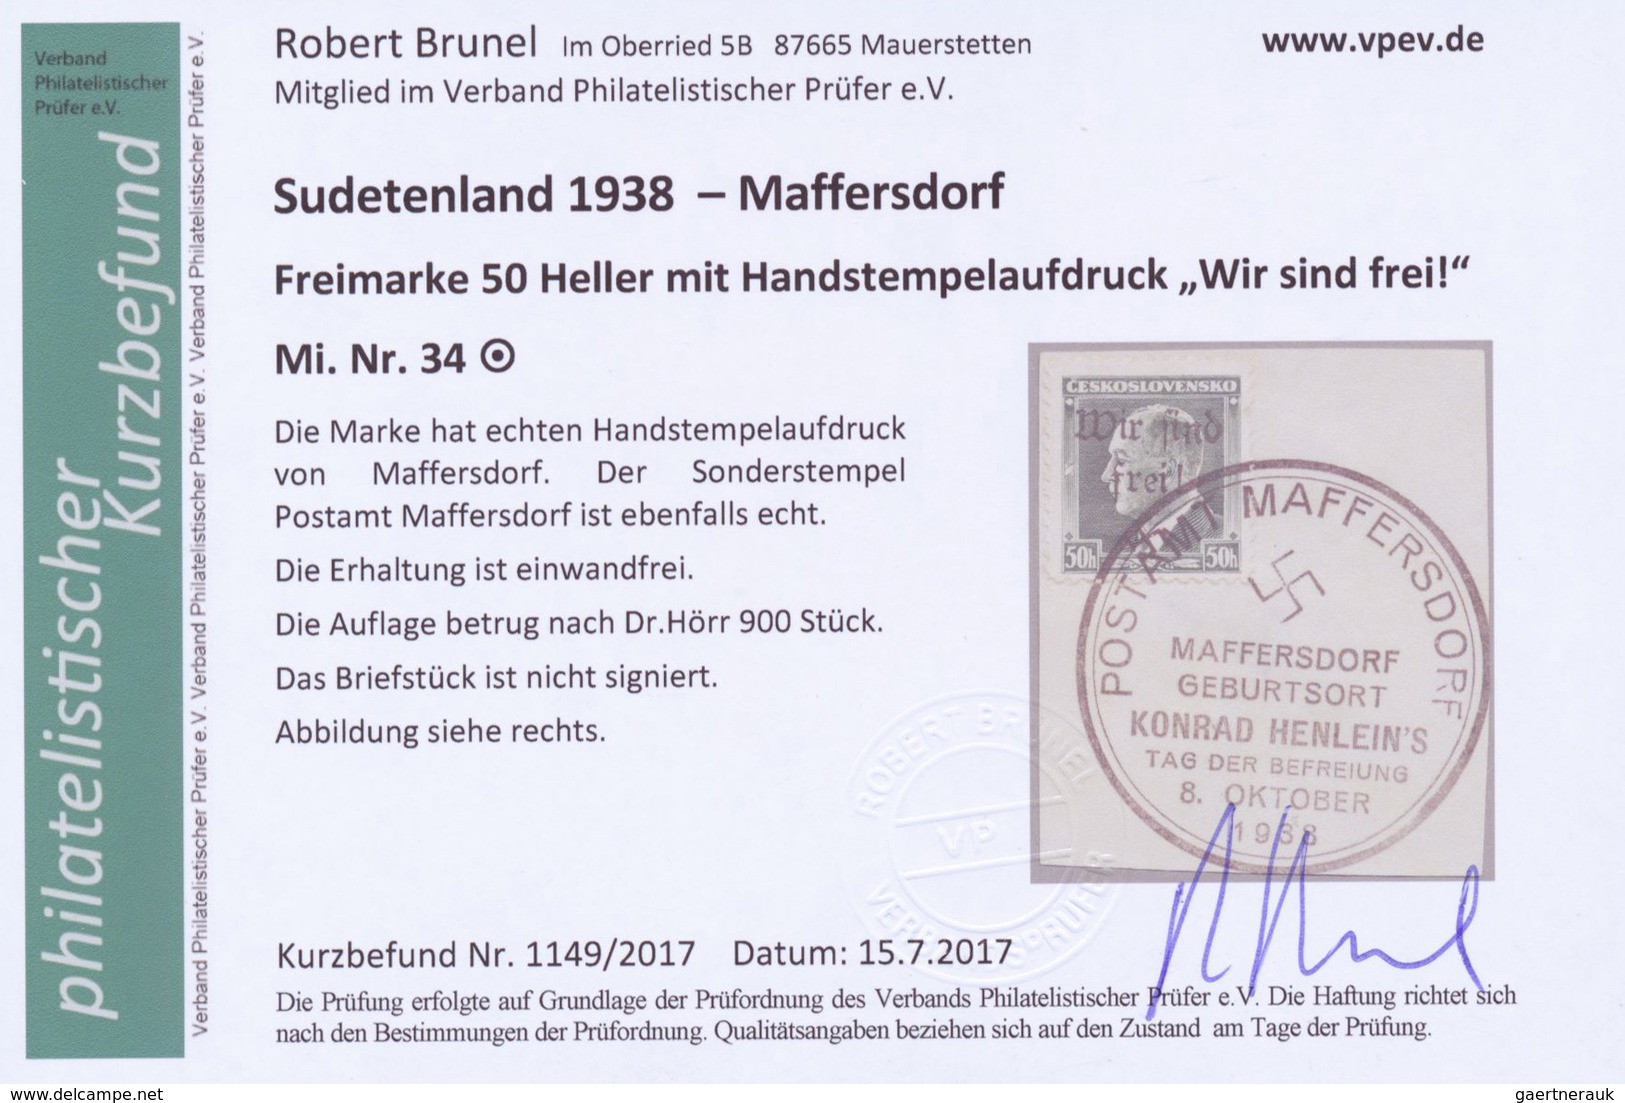 Brfst/Br Sudetenland - Maffersdorf: 1938, Mi.Nr. 14, 29, 31-34, 6 Werte auf Briefstück sowie Nr. 23 auf AK (G